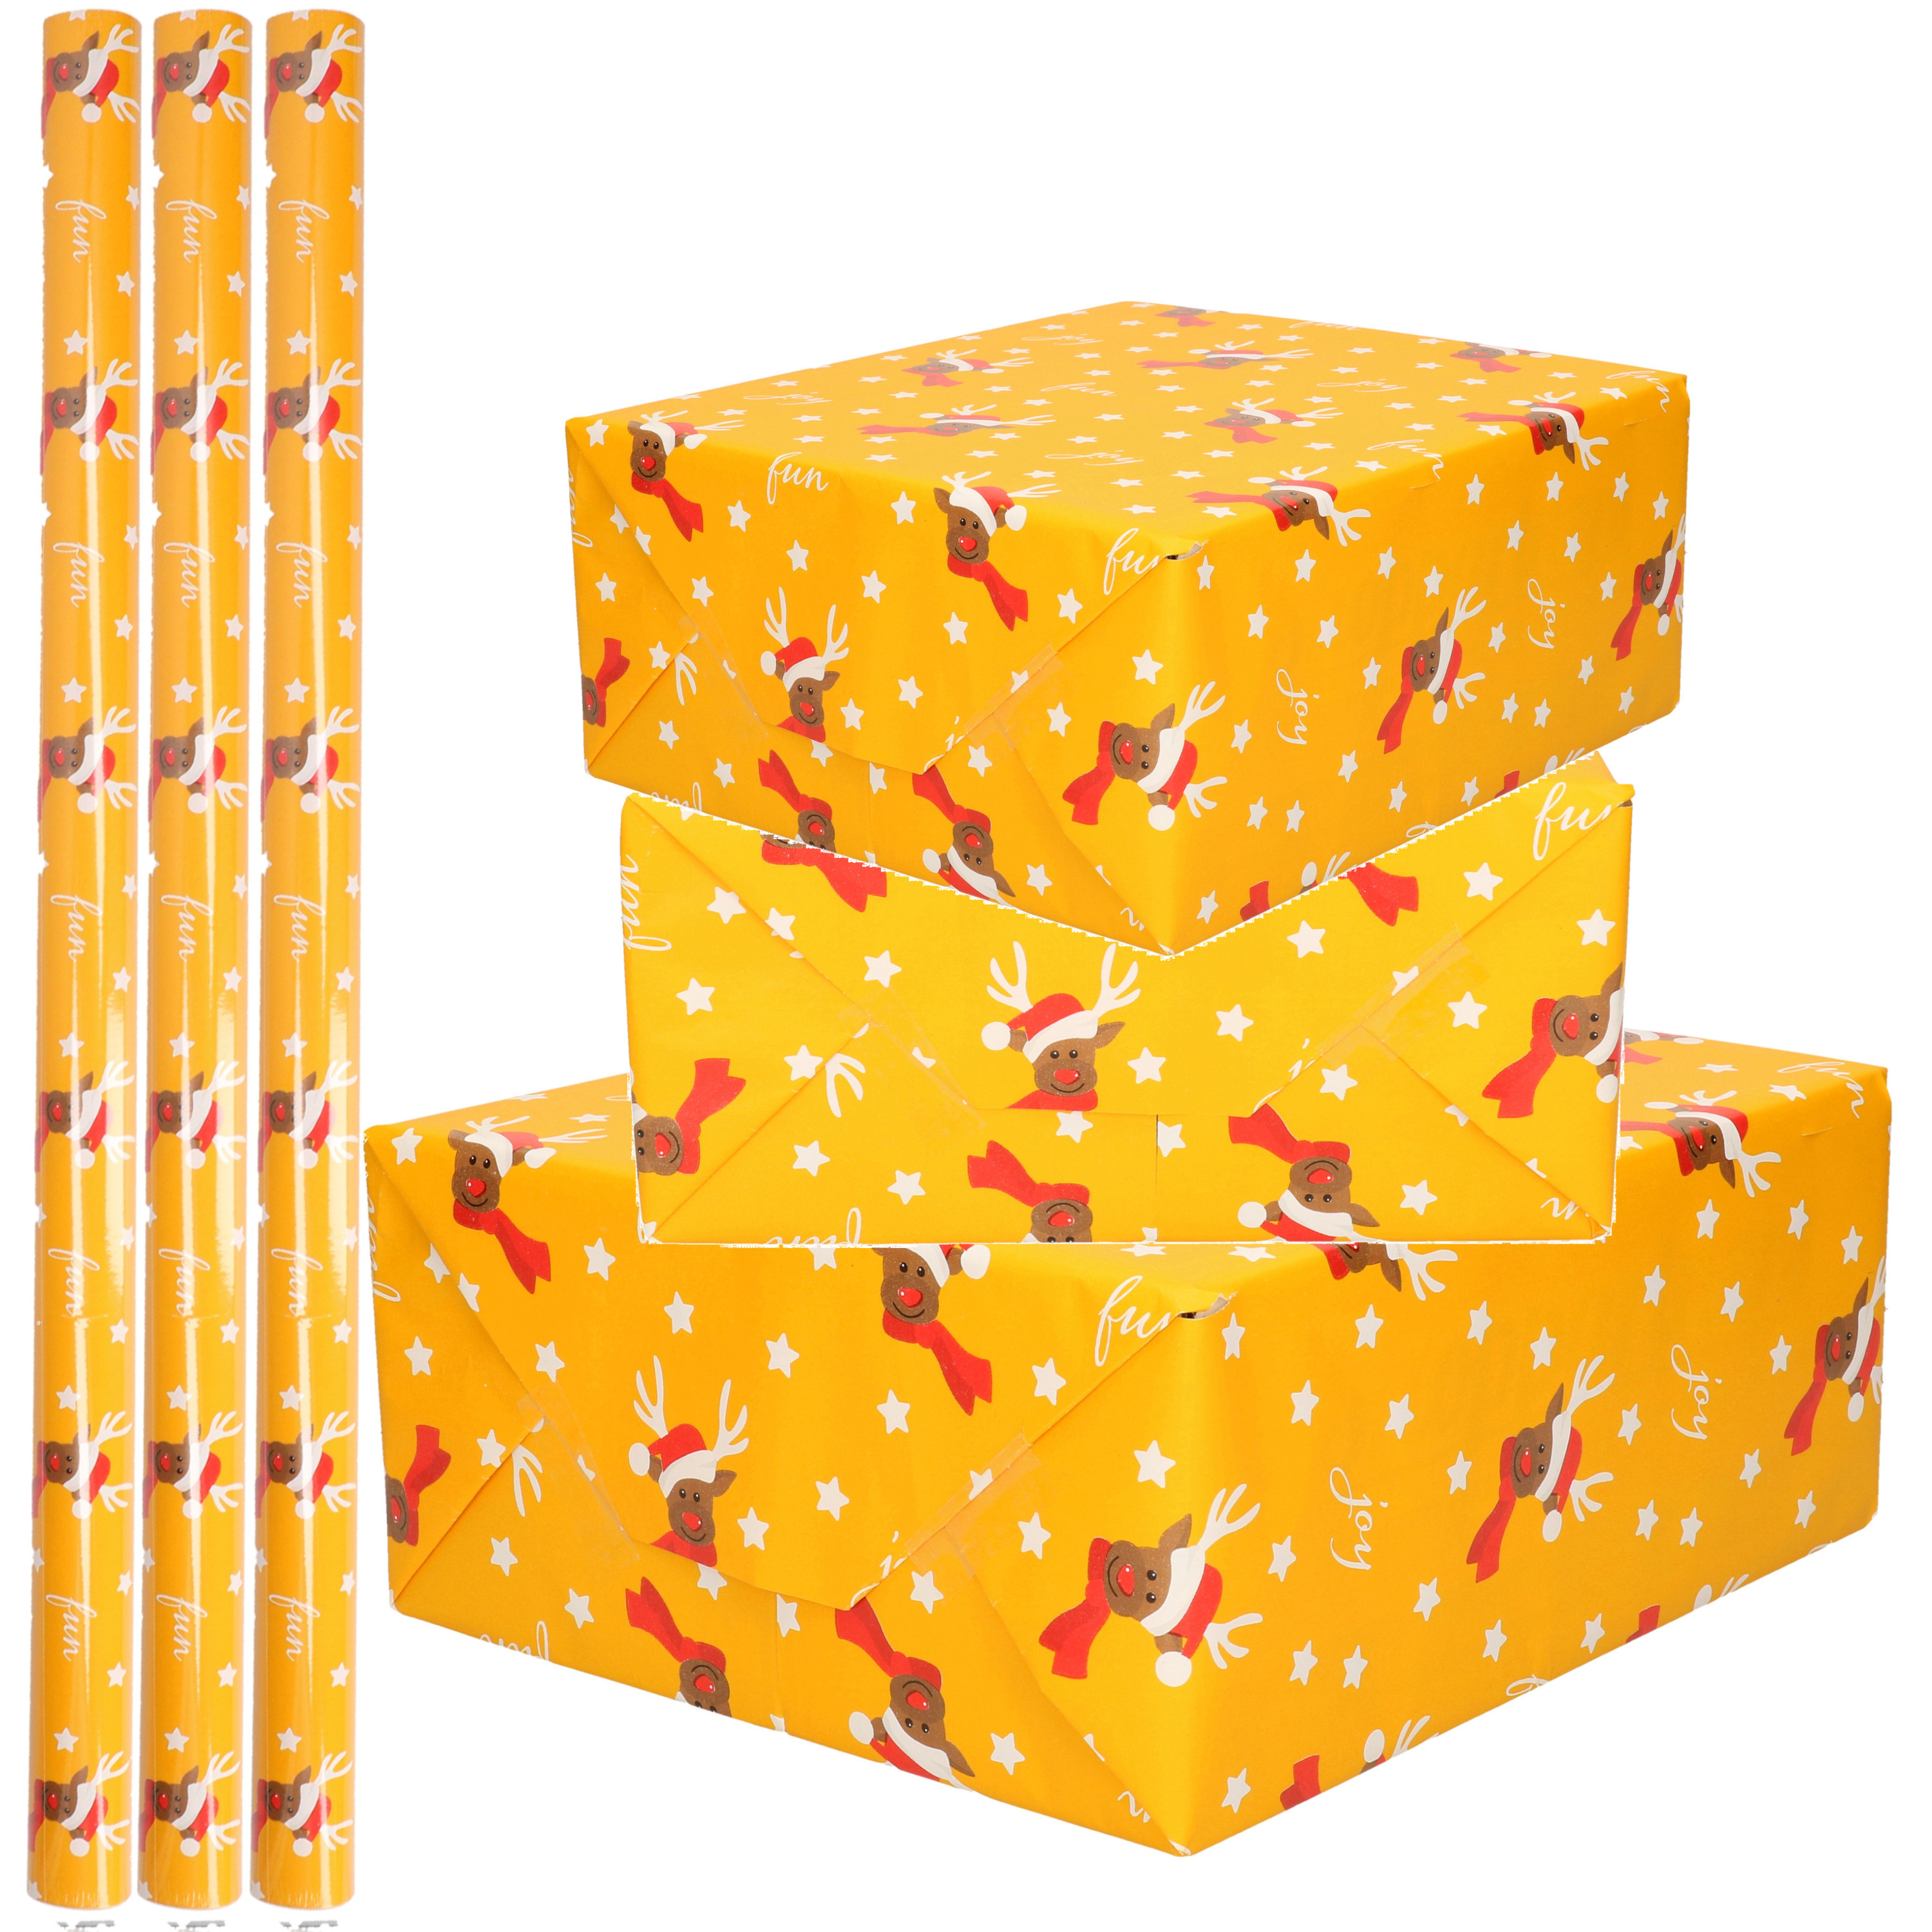 5x Rollen Kerst inpakpapier cadeaupapier oker geel rendieren fun 2,5 x 0,7 meter